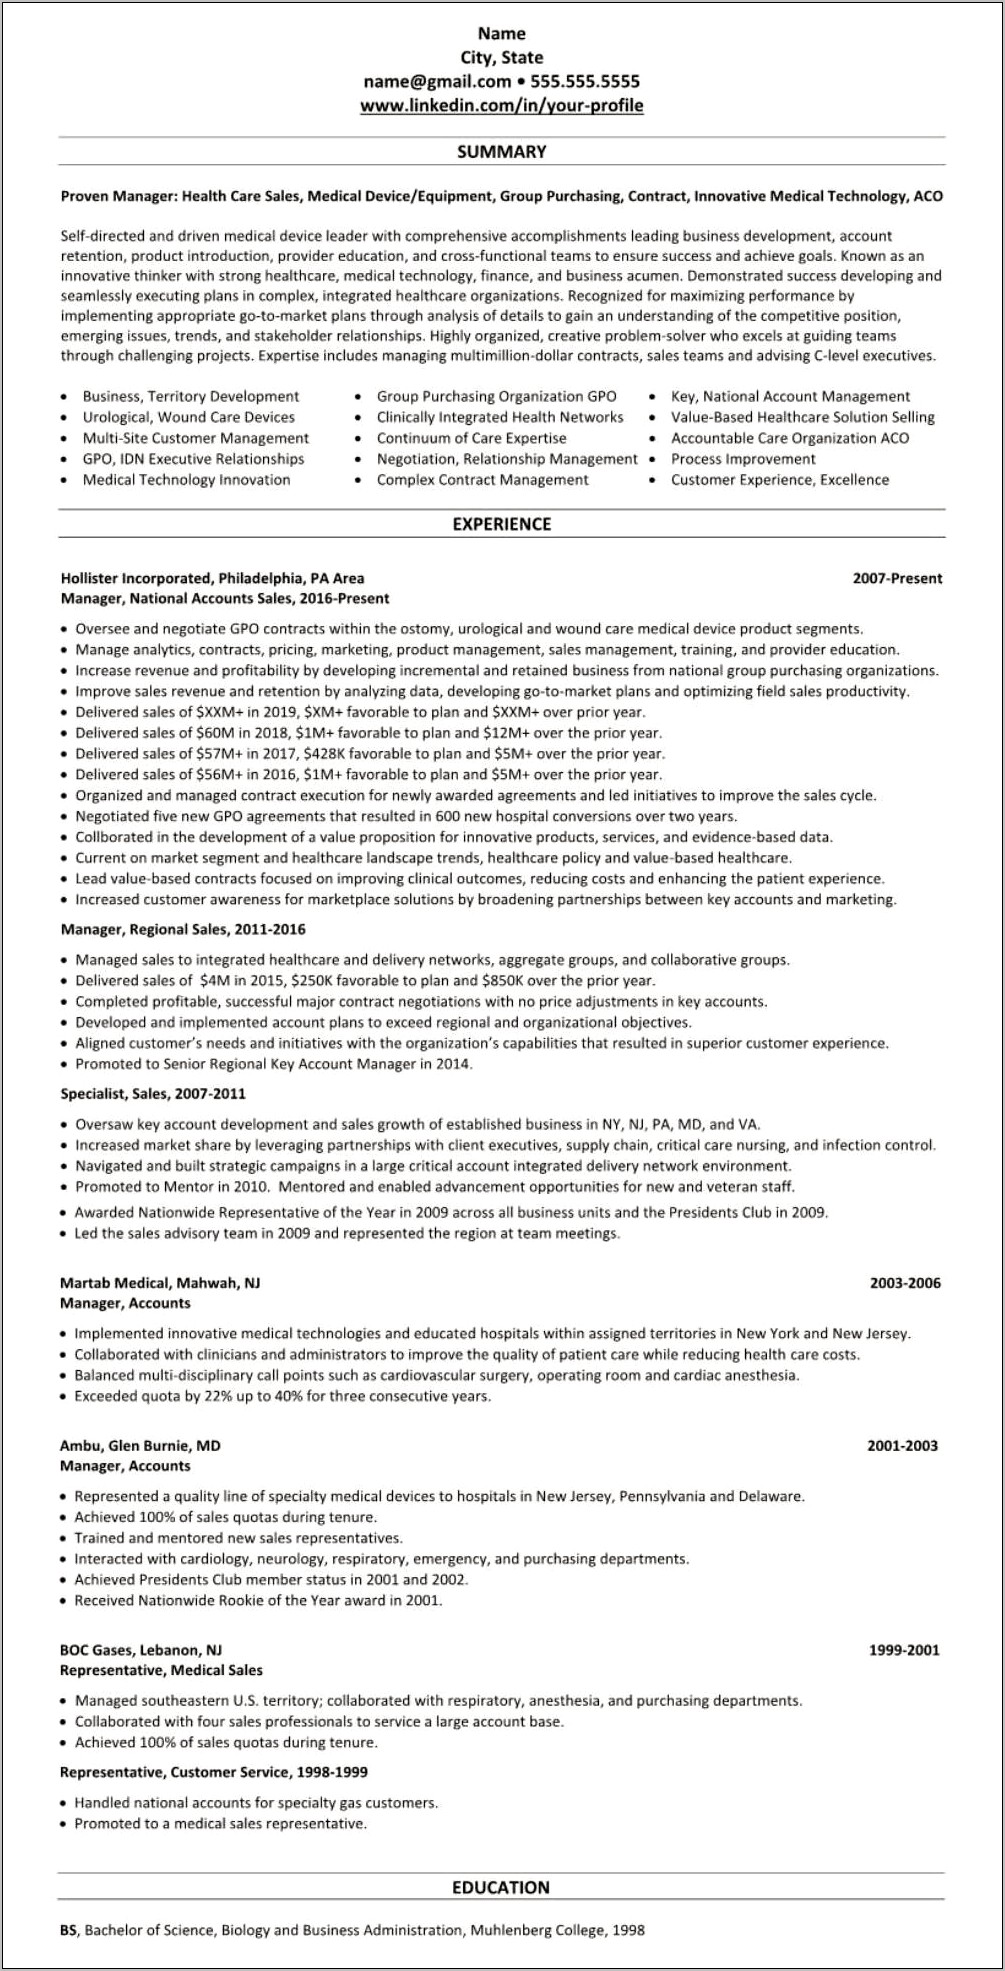 Sample Resume Of Medical Sales Representative